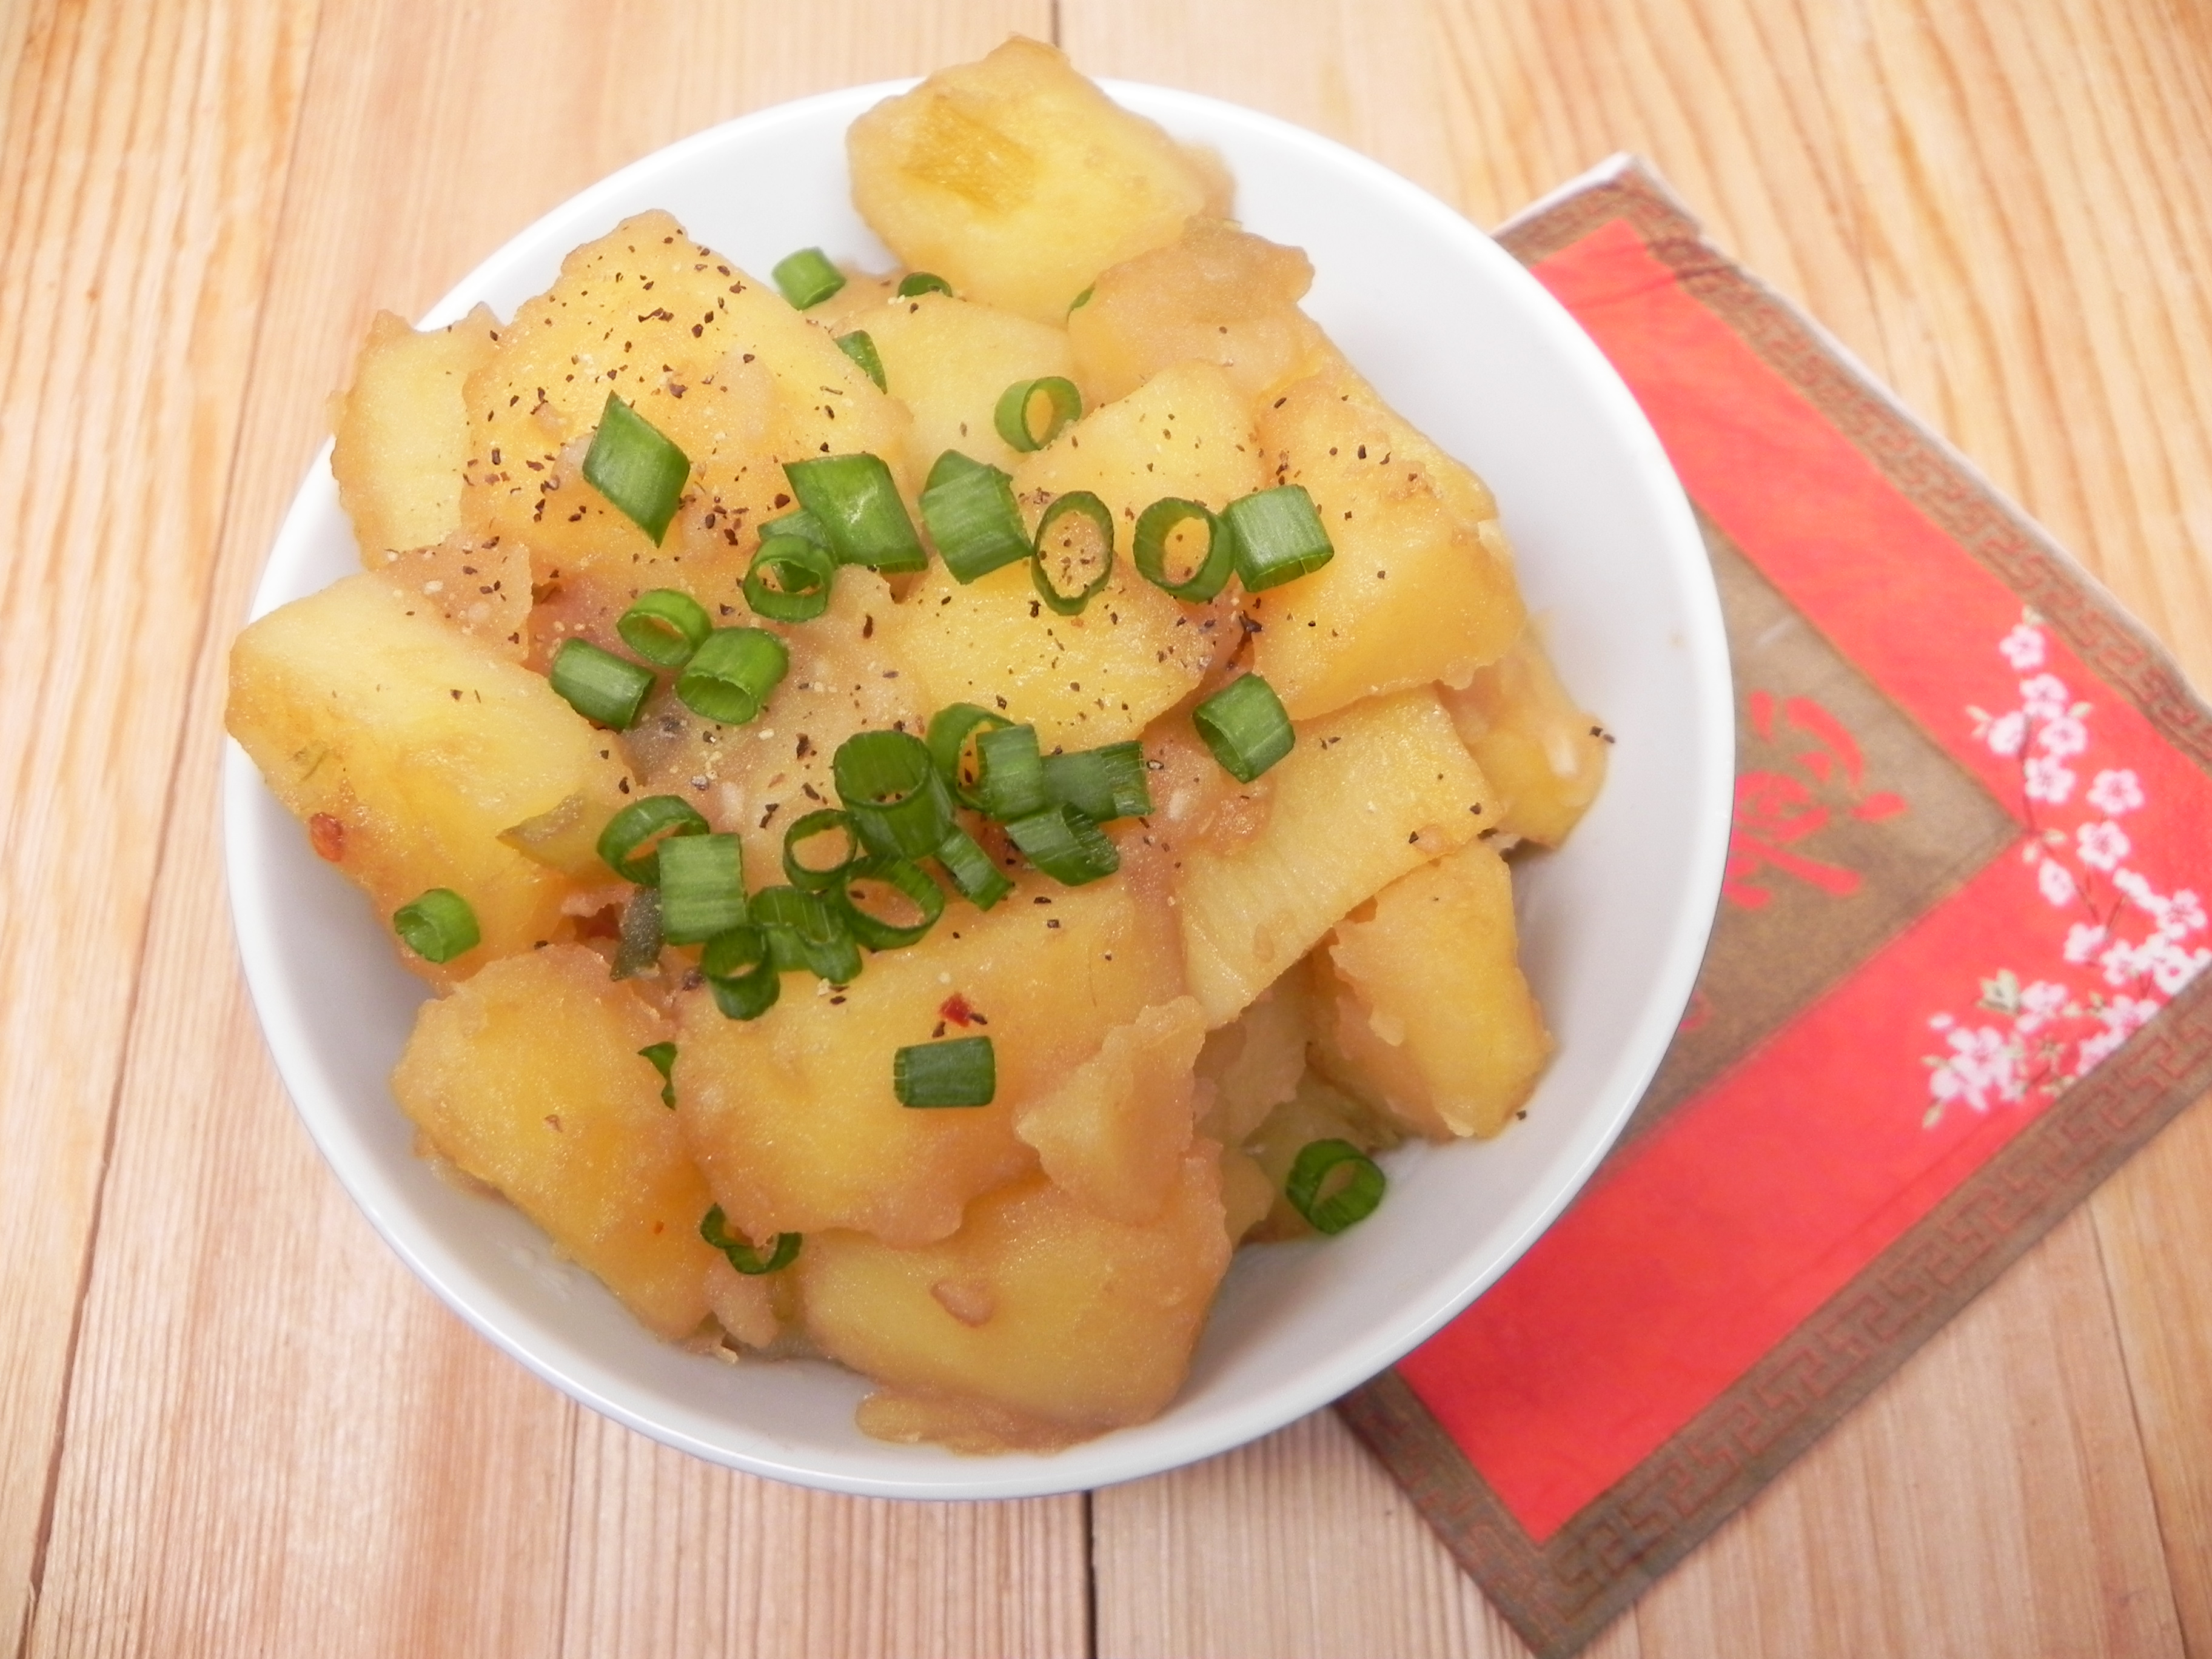 Gamja Jorim (Korean Potato Dish)